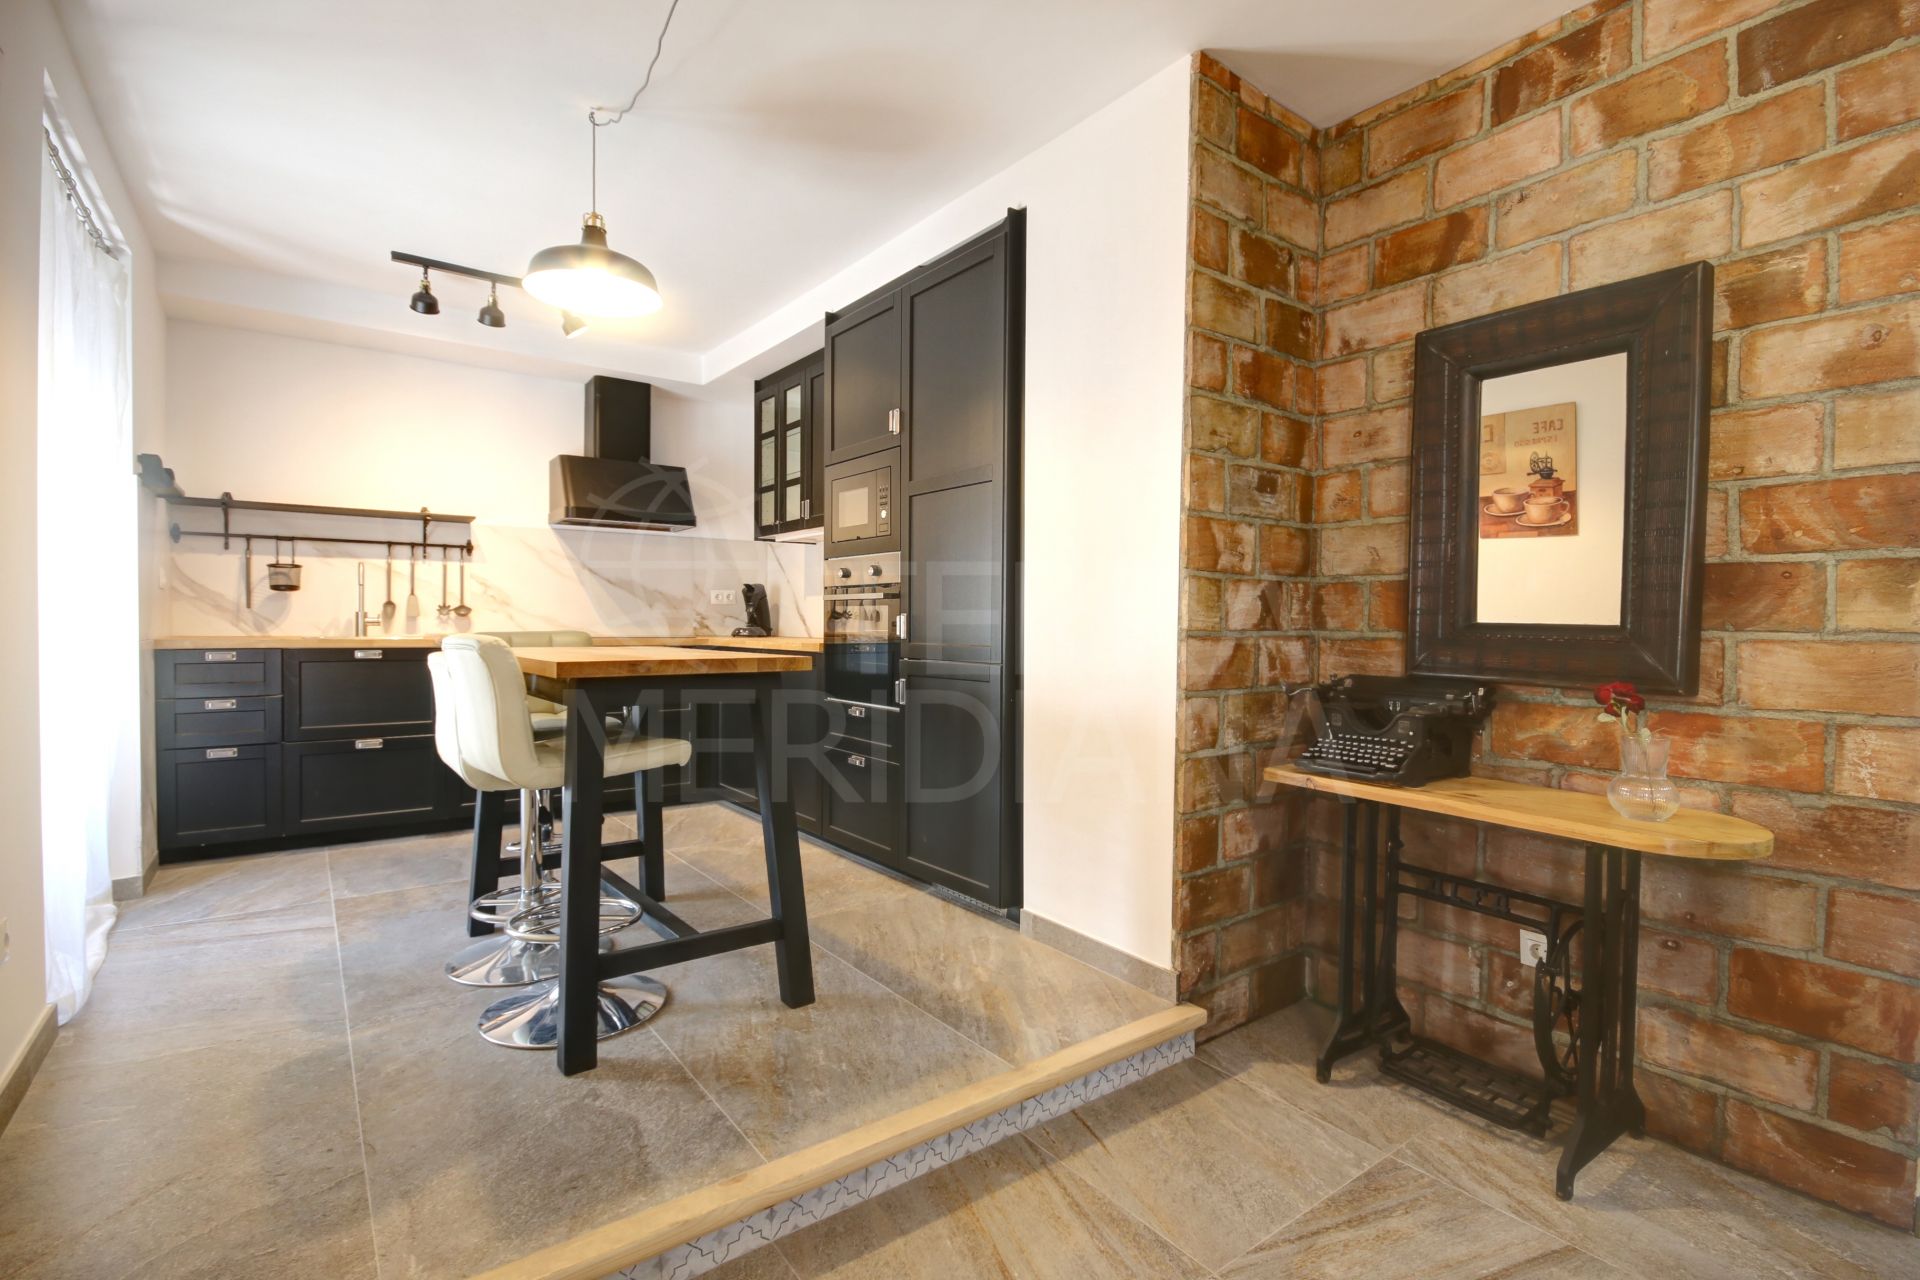 Se vende casa adosada reformada en el casco antiguo de Estepona, cerca de la Plaza de las Flores